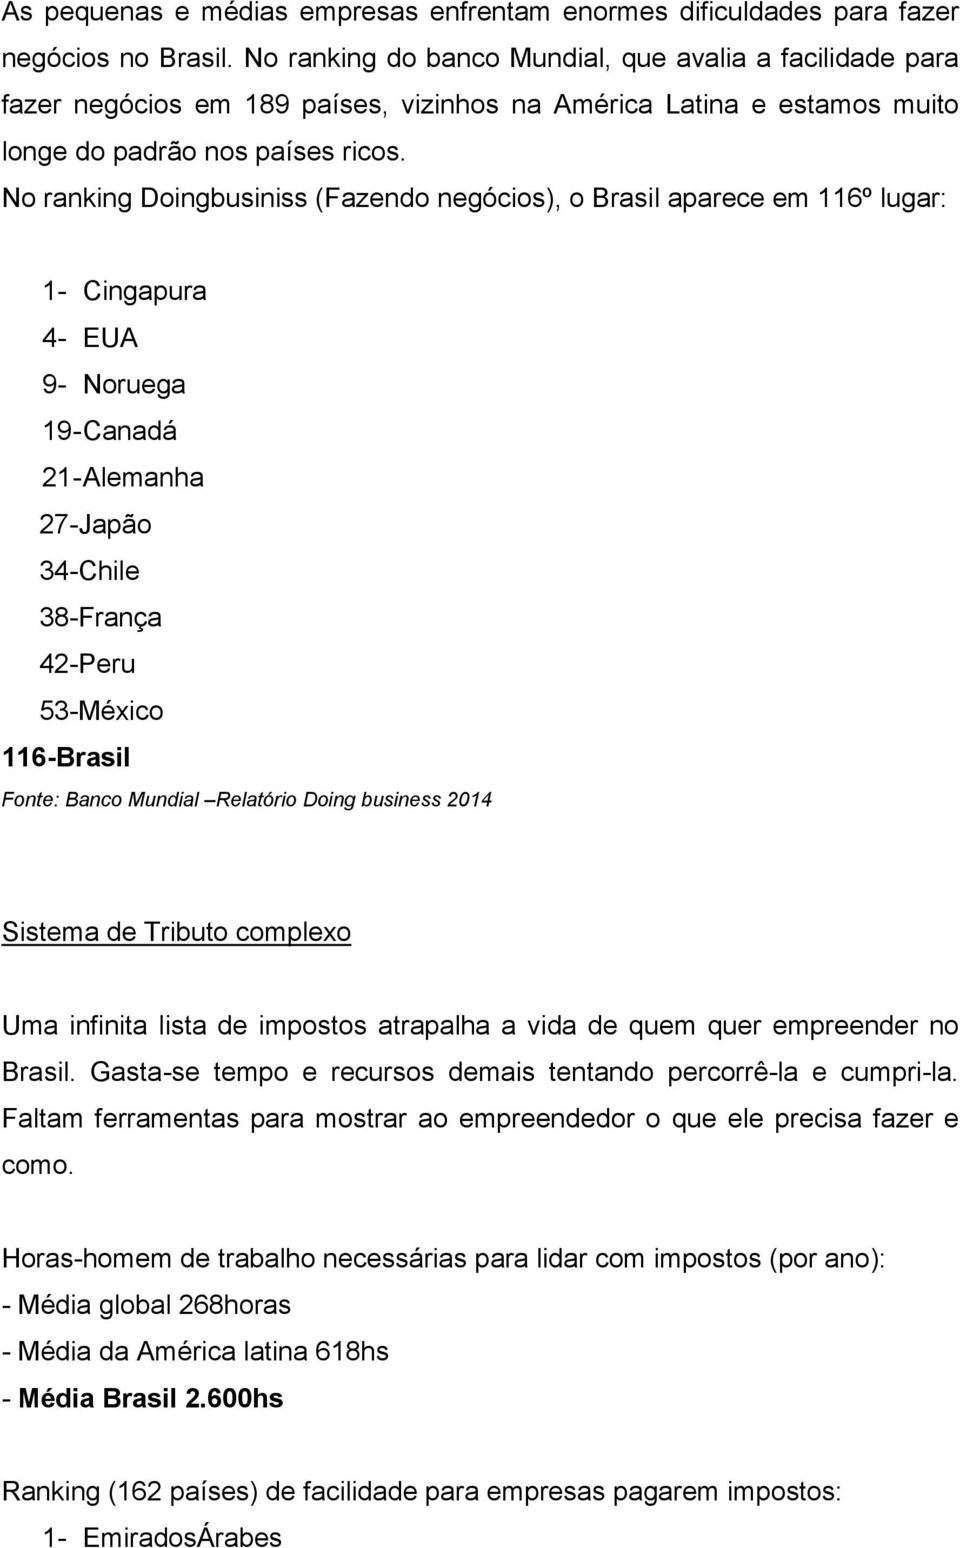 No ranking Doingbusiniss (Fazendo negócios), o Brasil aparece em 116º lugar: 1- Cingapura 4- EUA 9- Noruega 19- Canadá 21- Alemanha 27-Japão 34-Chile 38-França 42-Peru 53-México 116-Brasil Fonte: